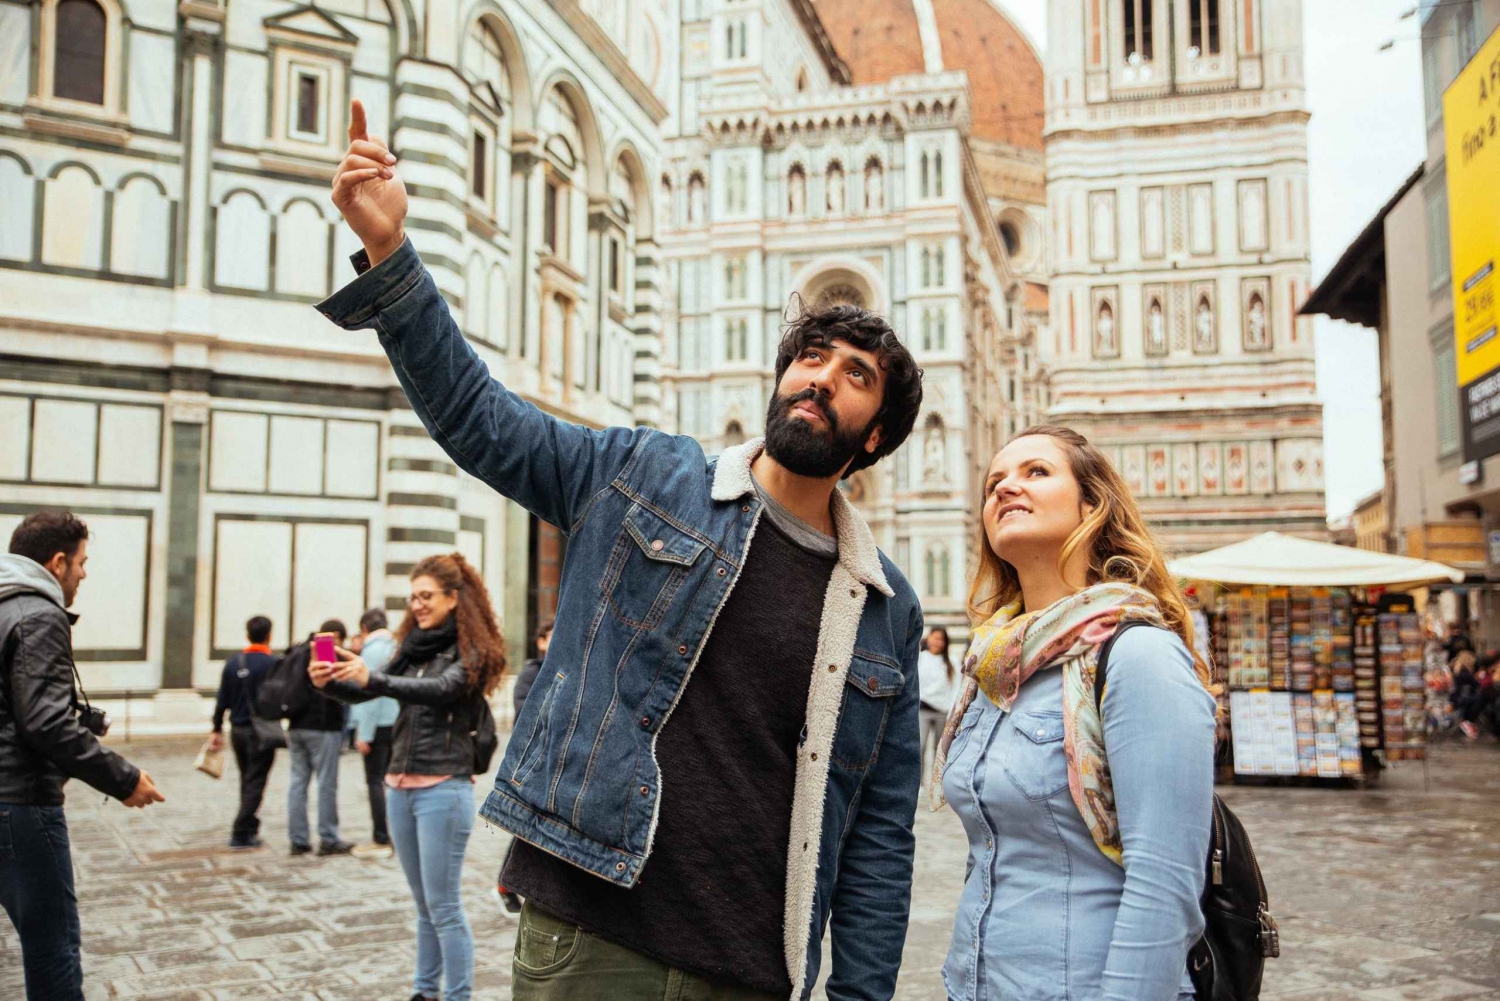 Firenze: Privat tur med lokale – højdepunkter og skjulte perler